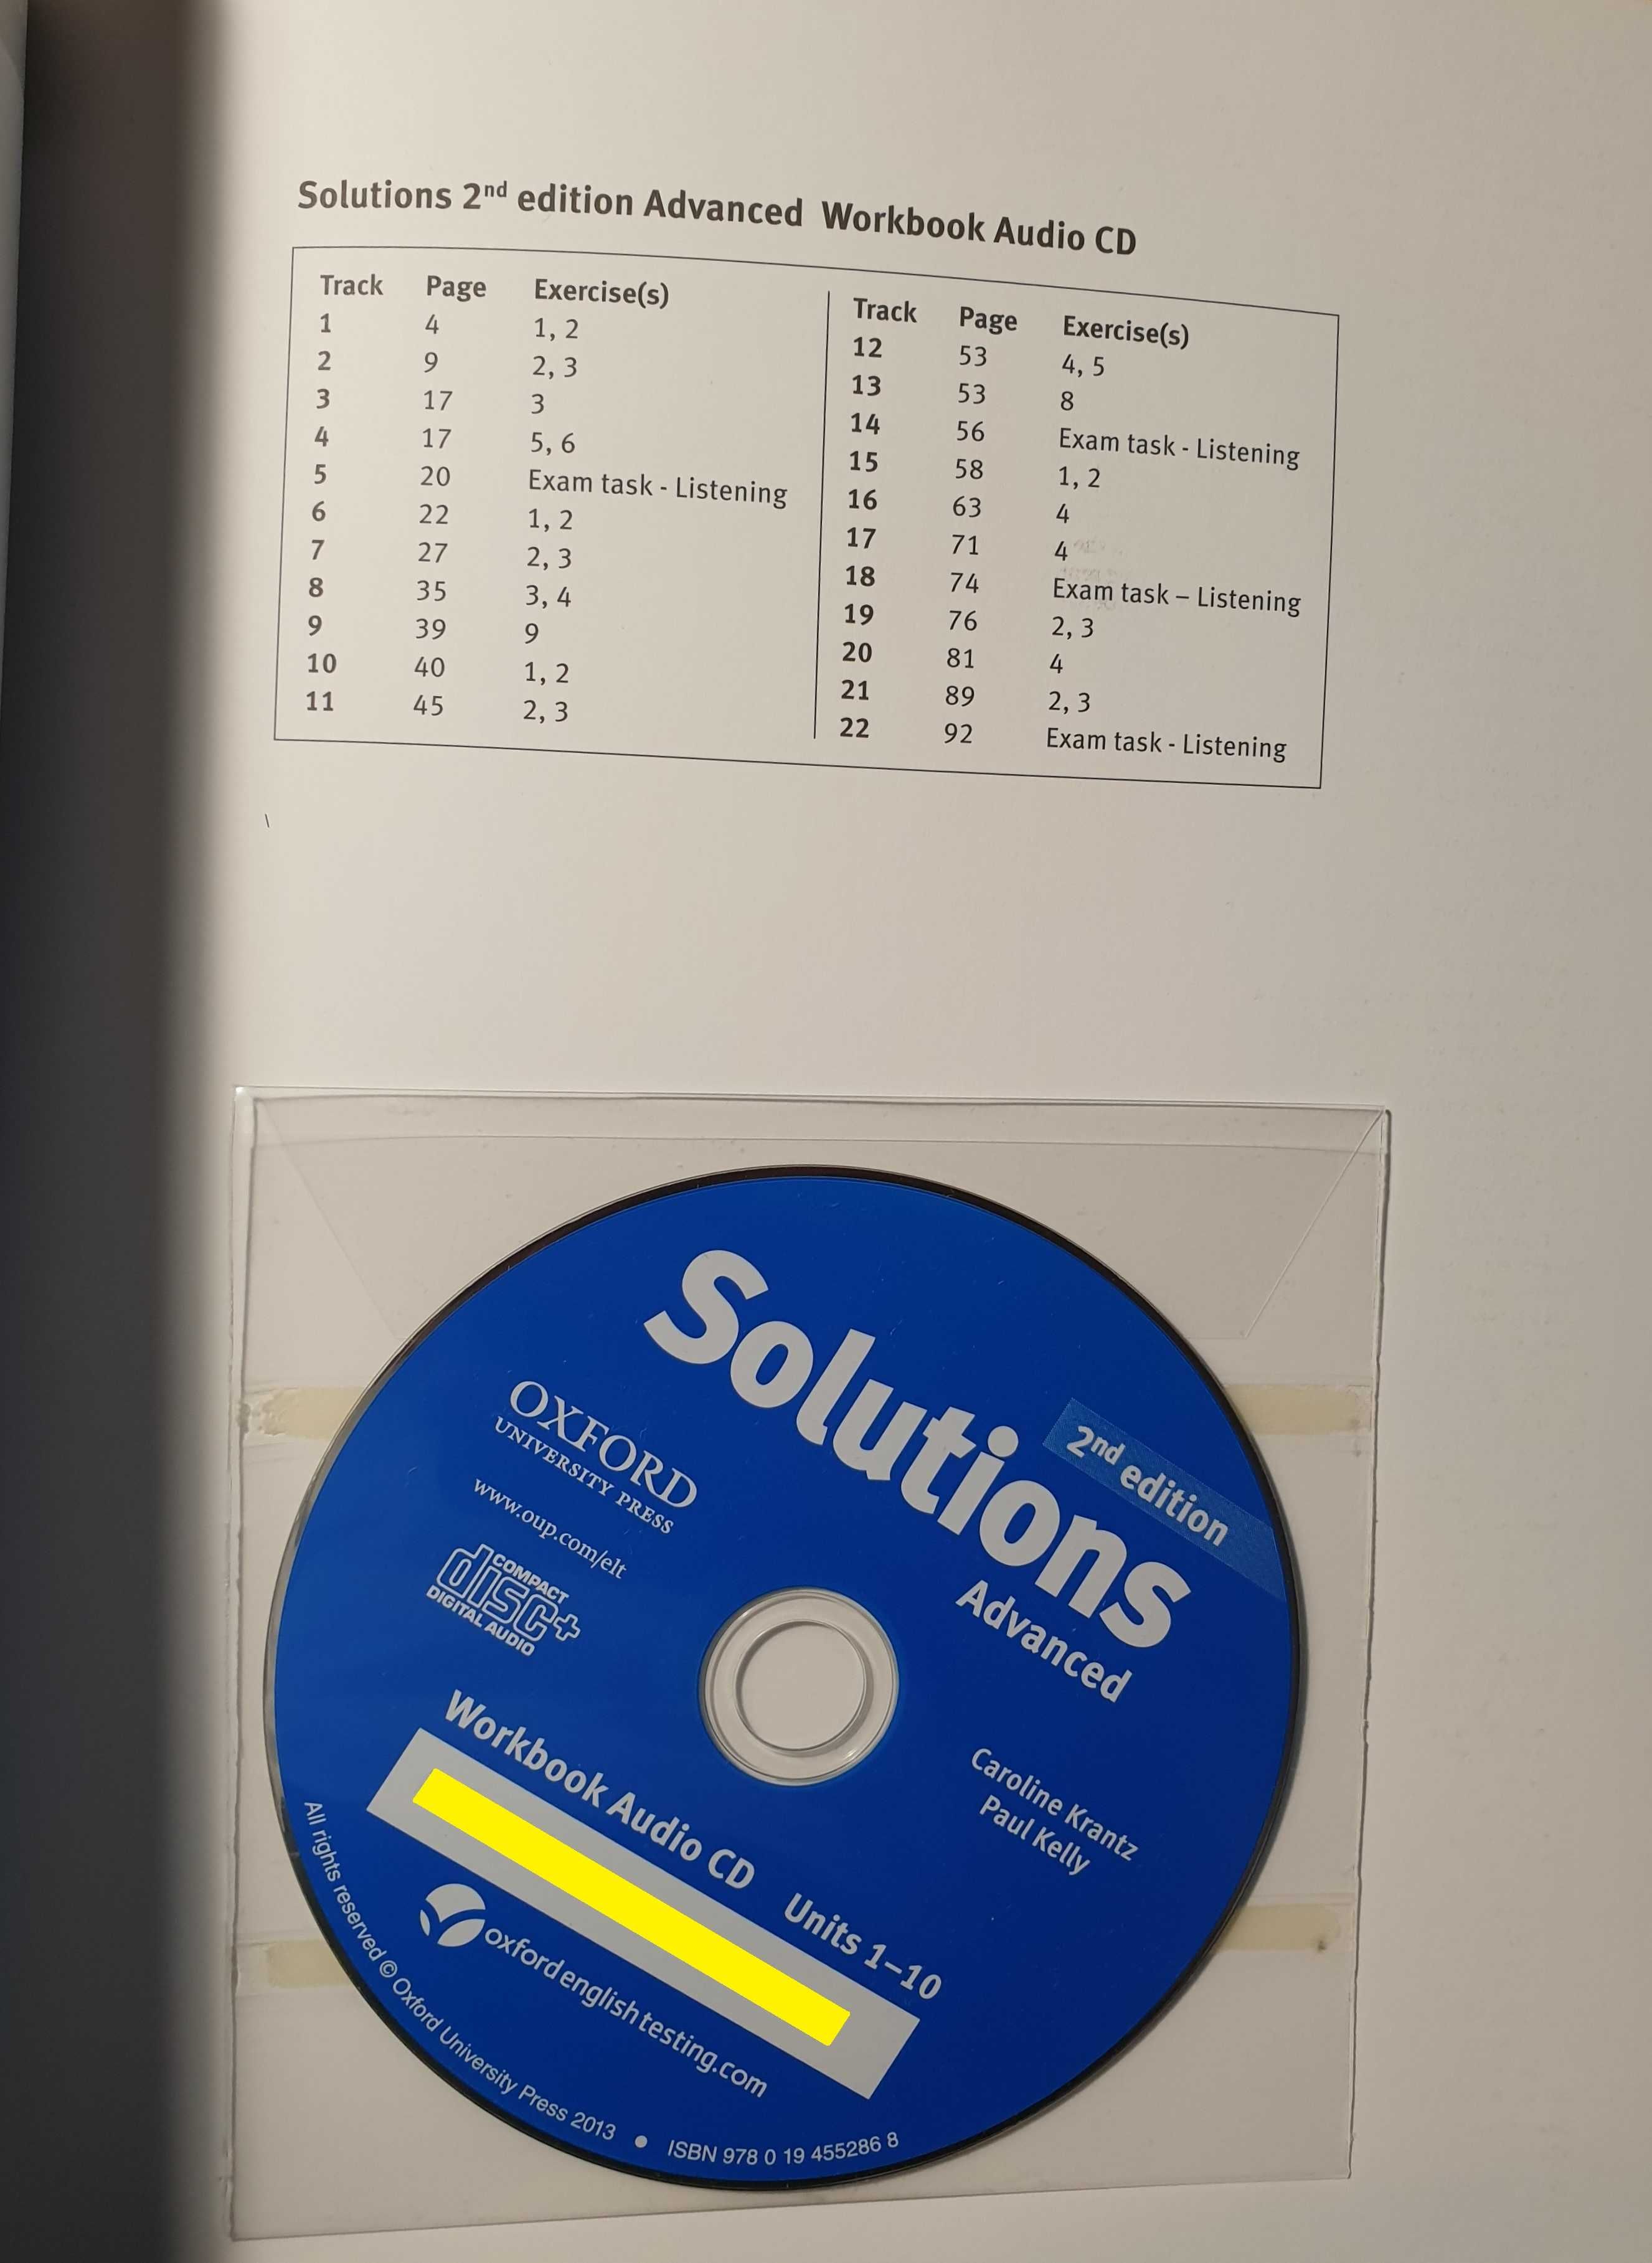 Solutions Advanced, 2nd Edition - Учебник и тетрадка по английски език